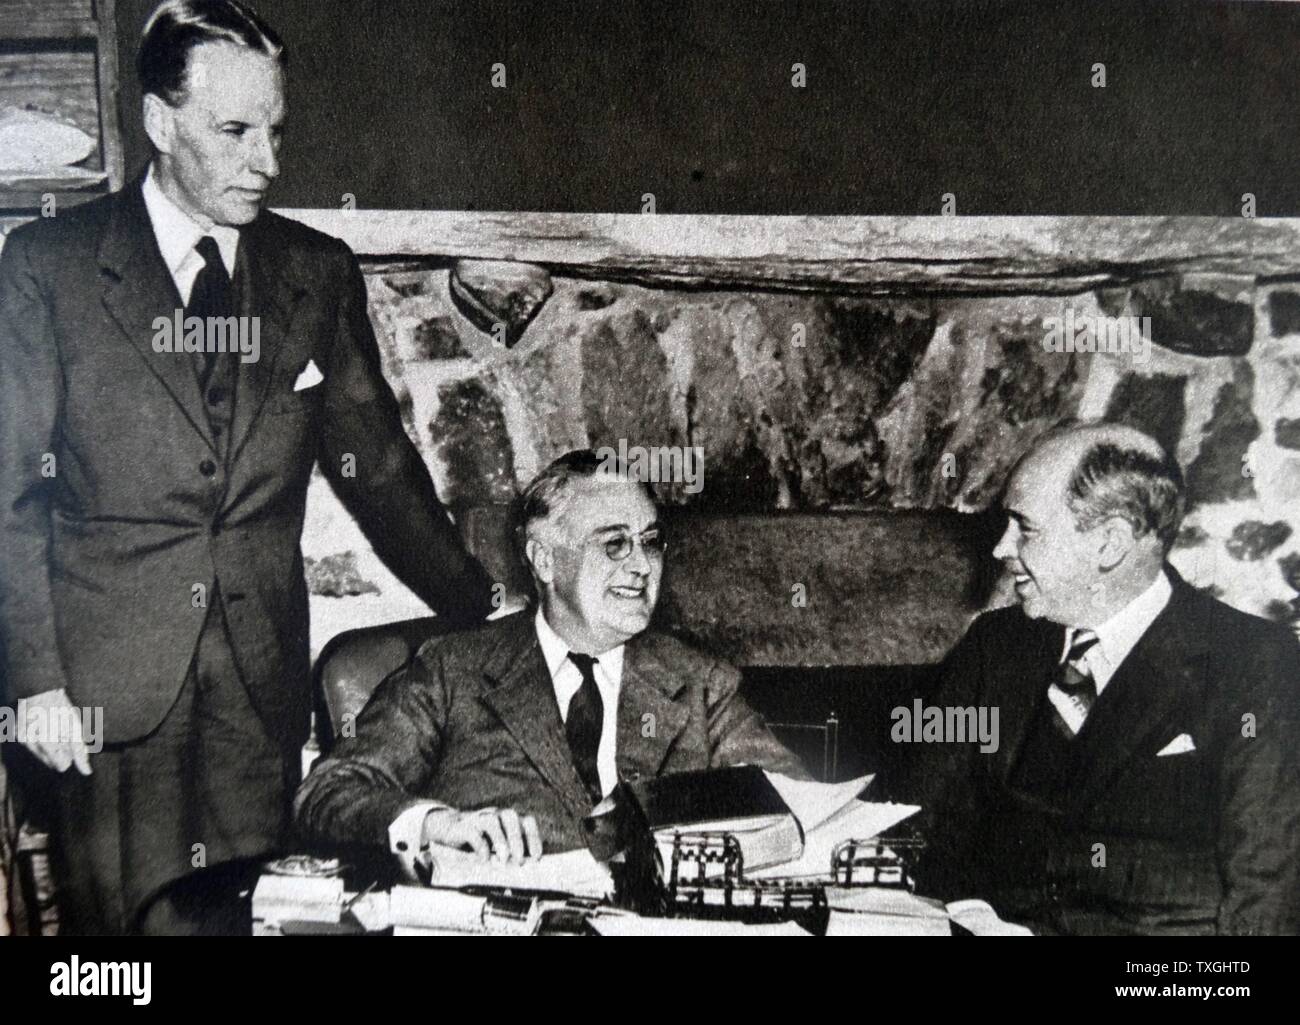 Stampa fotografica del Presidente Franklin D. Roosevelt (1882-1945) con William Philips (1878-1968) una carriera negli Stati Uniti diplomatico e Hugh R. Wilson (1885-1946) gli stati degli Stati Uniti Servizio esteri. In data xx secolo Foto Stock